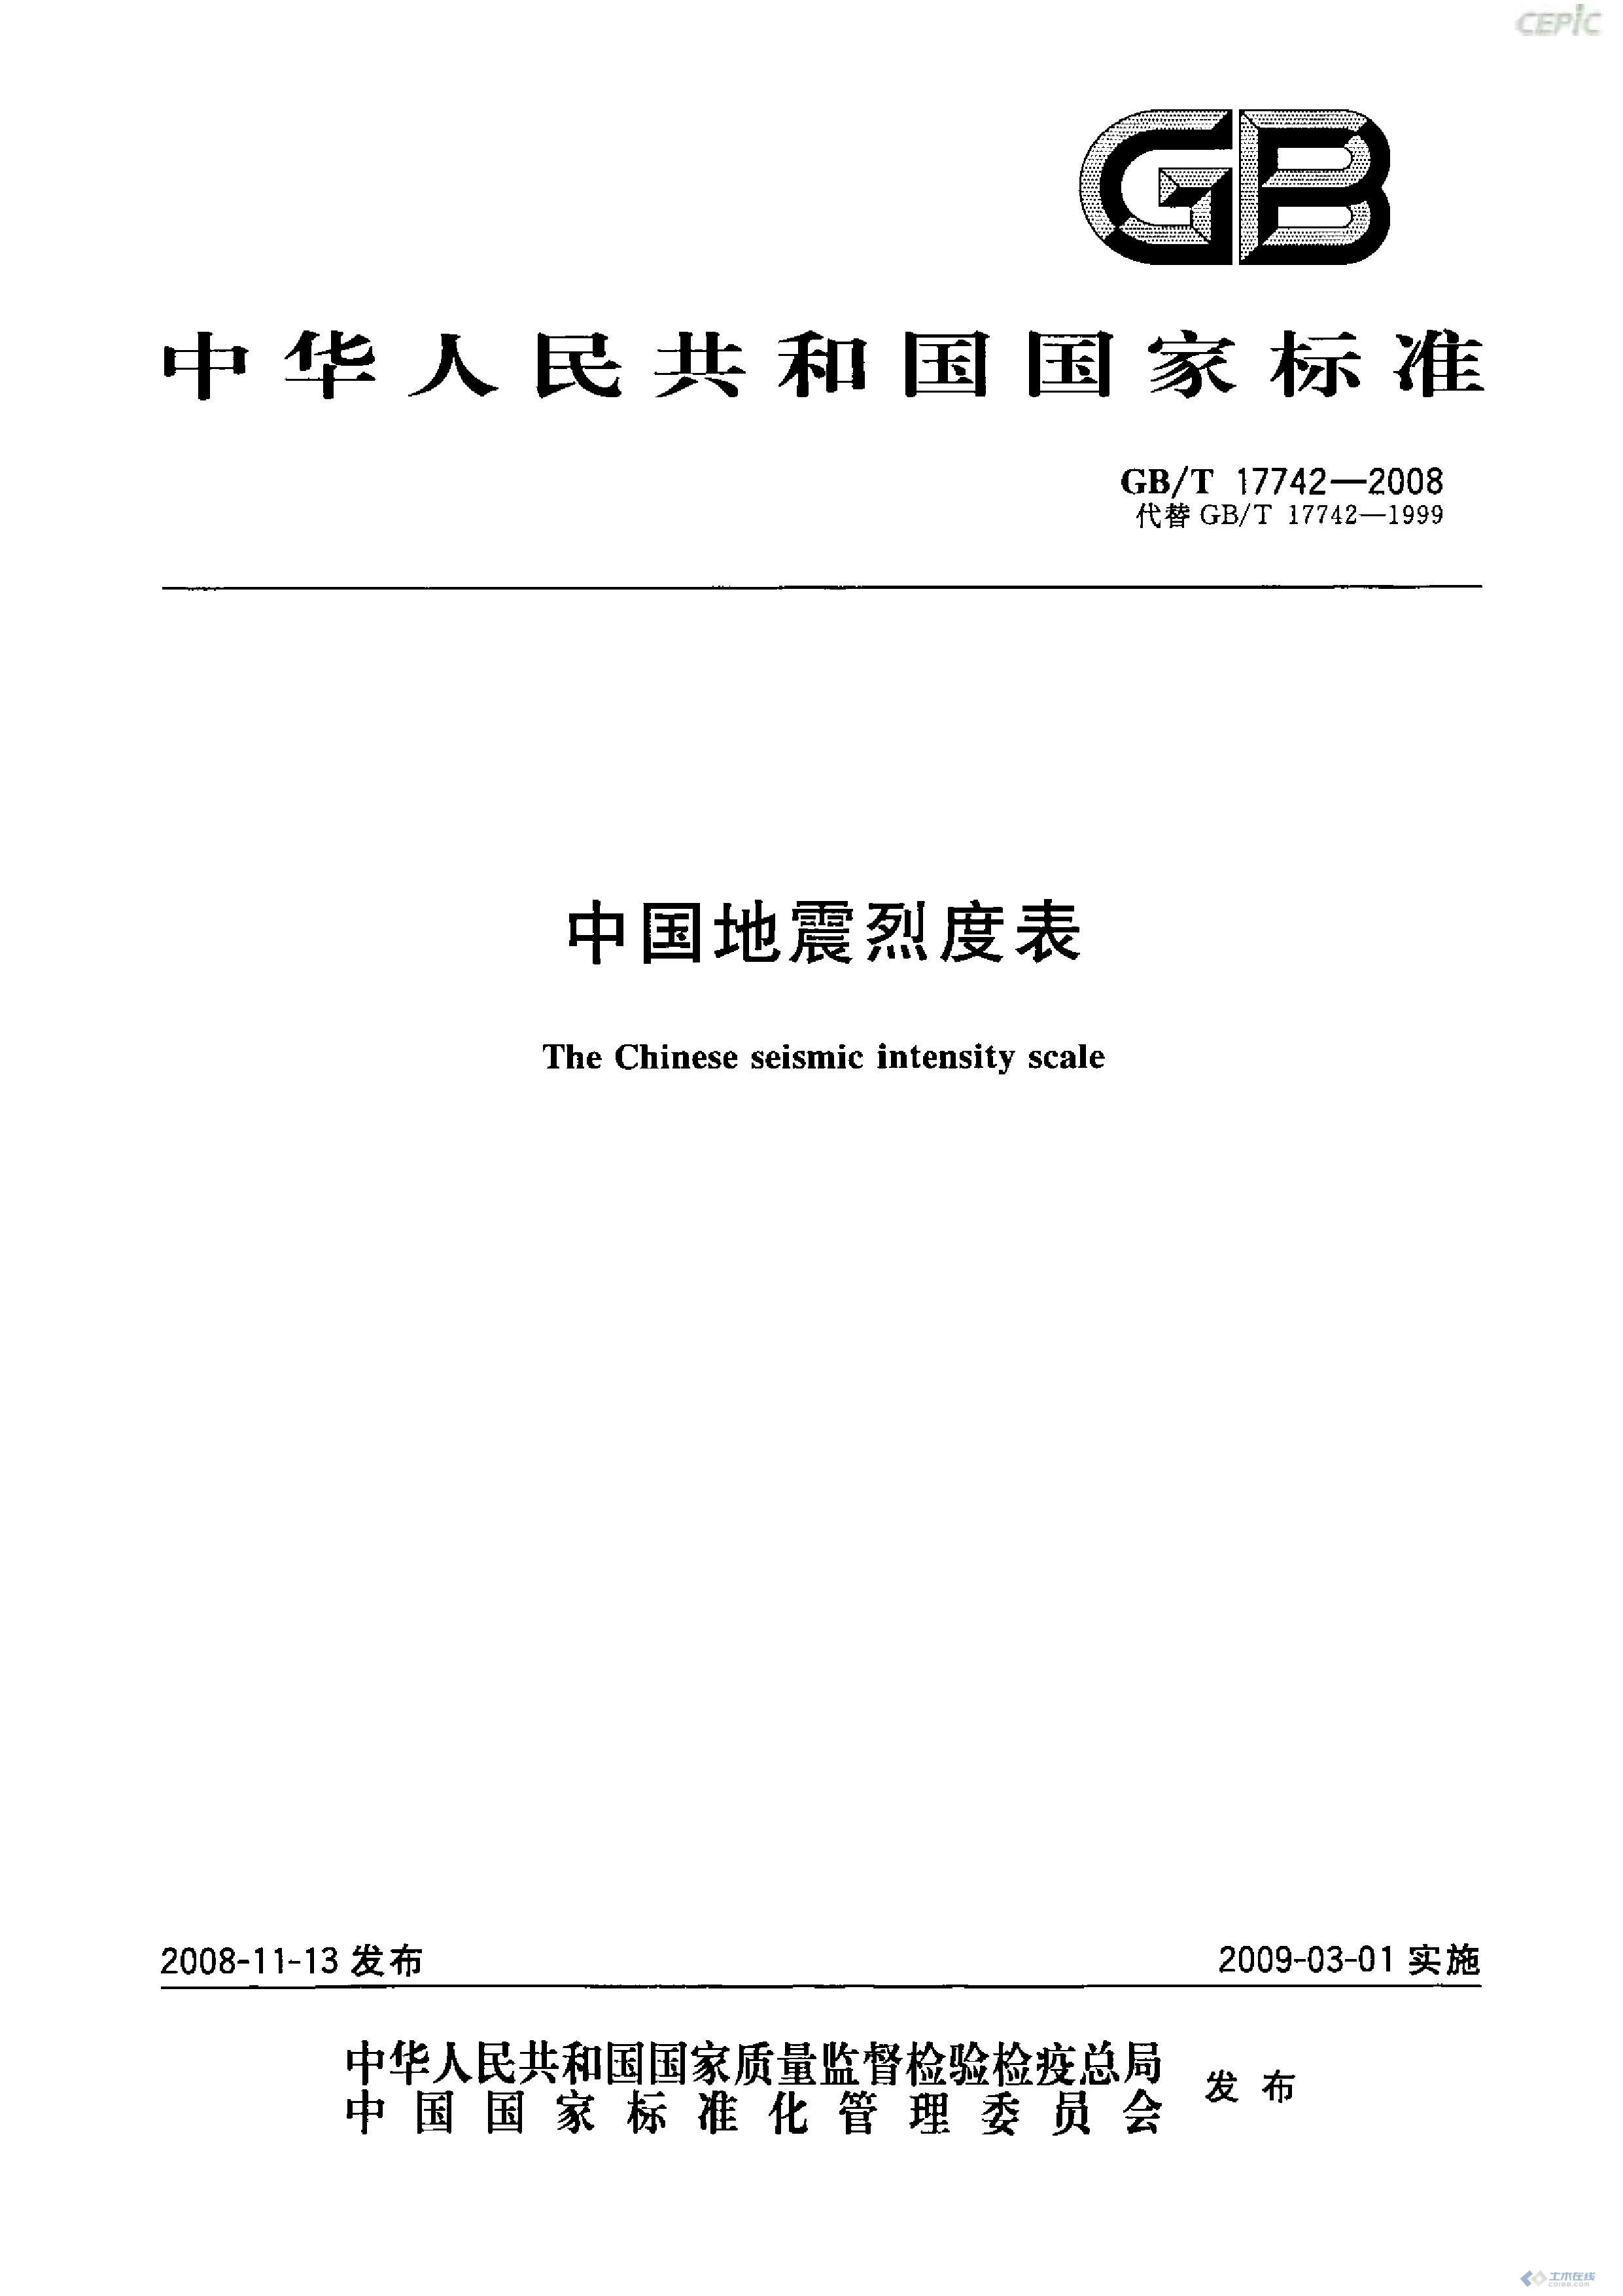 页面提取自－ 中国地震烈度表 17742-2008.jpg